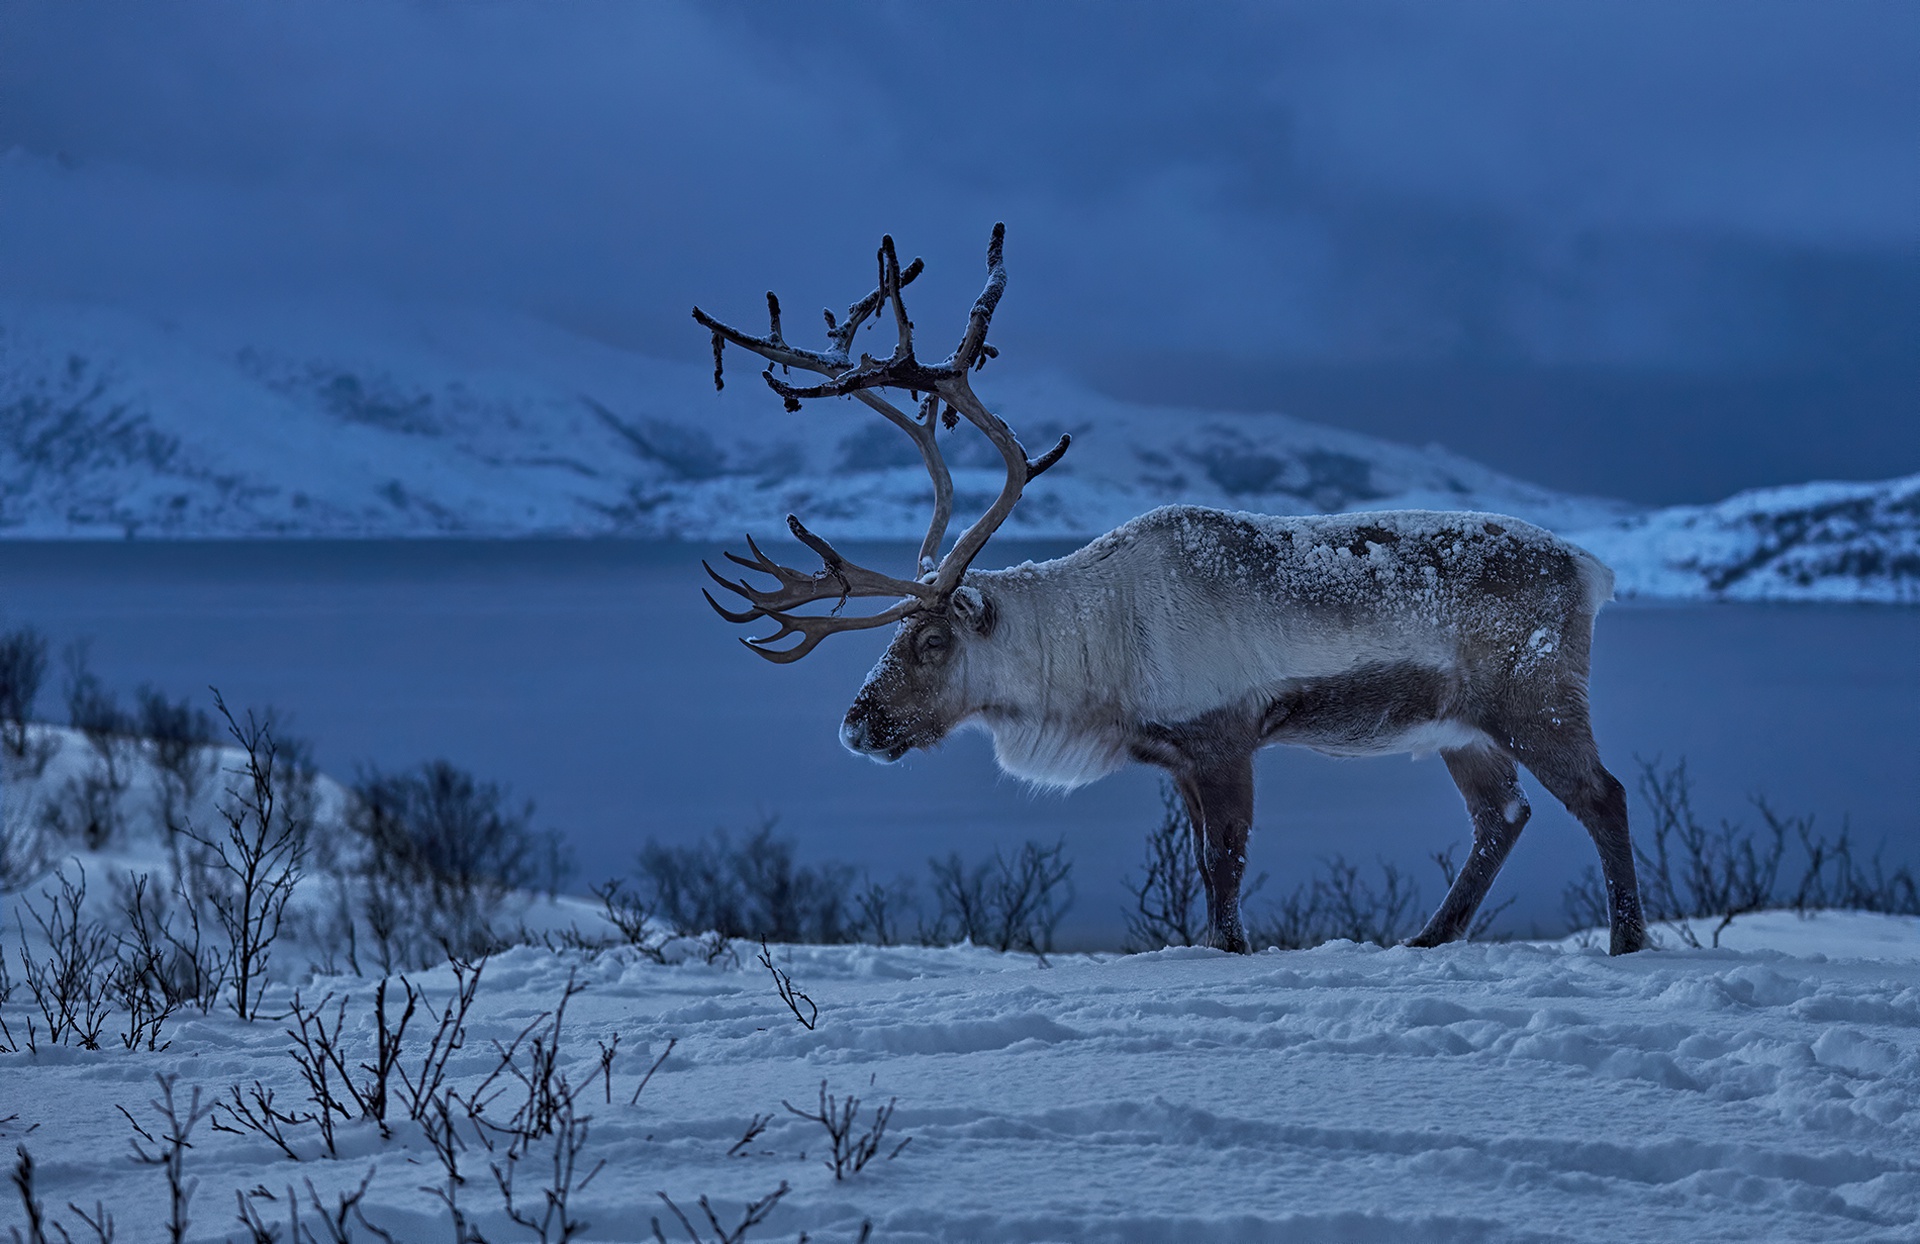 Descarga gratuita de fondo de pantalla para móvil de Animales, Invierno, Nieve, Noruega, Reno.